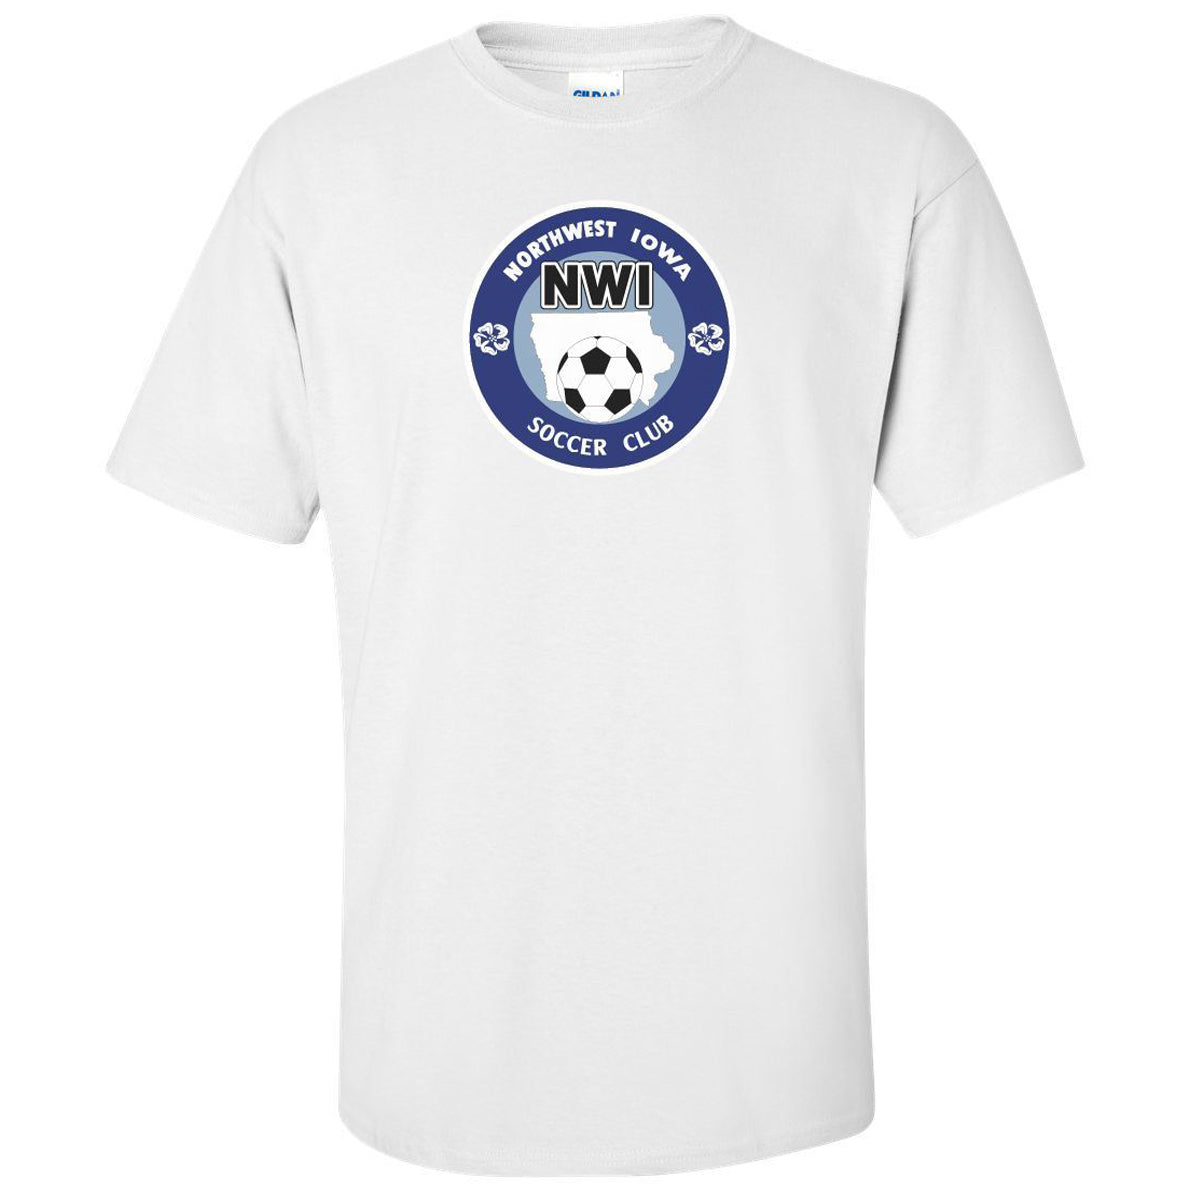 NWISC Galaxy | Garment Print Badge Tee Tshirt Gildan Youth Medium 